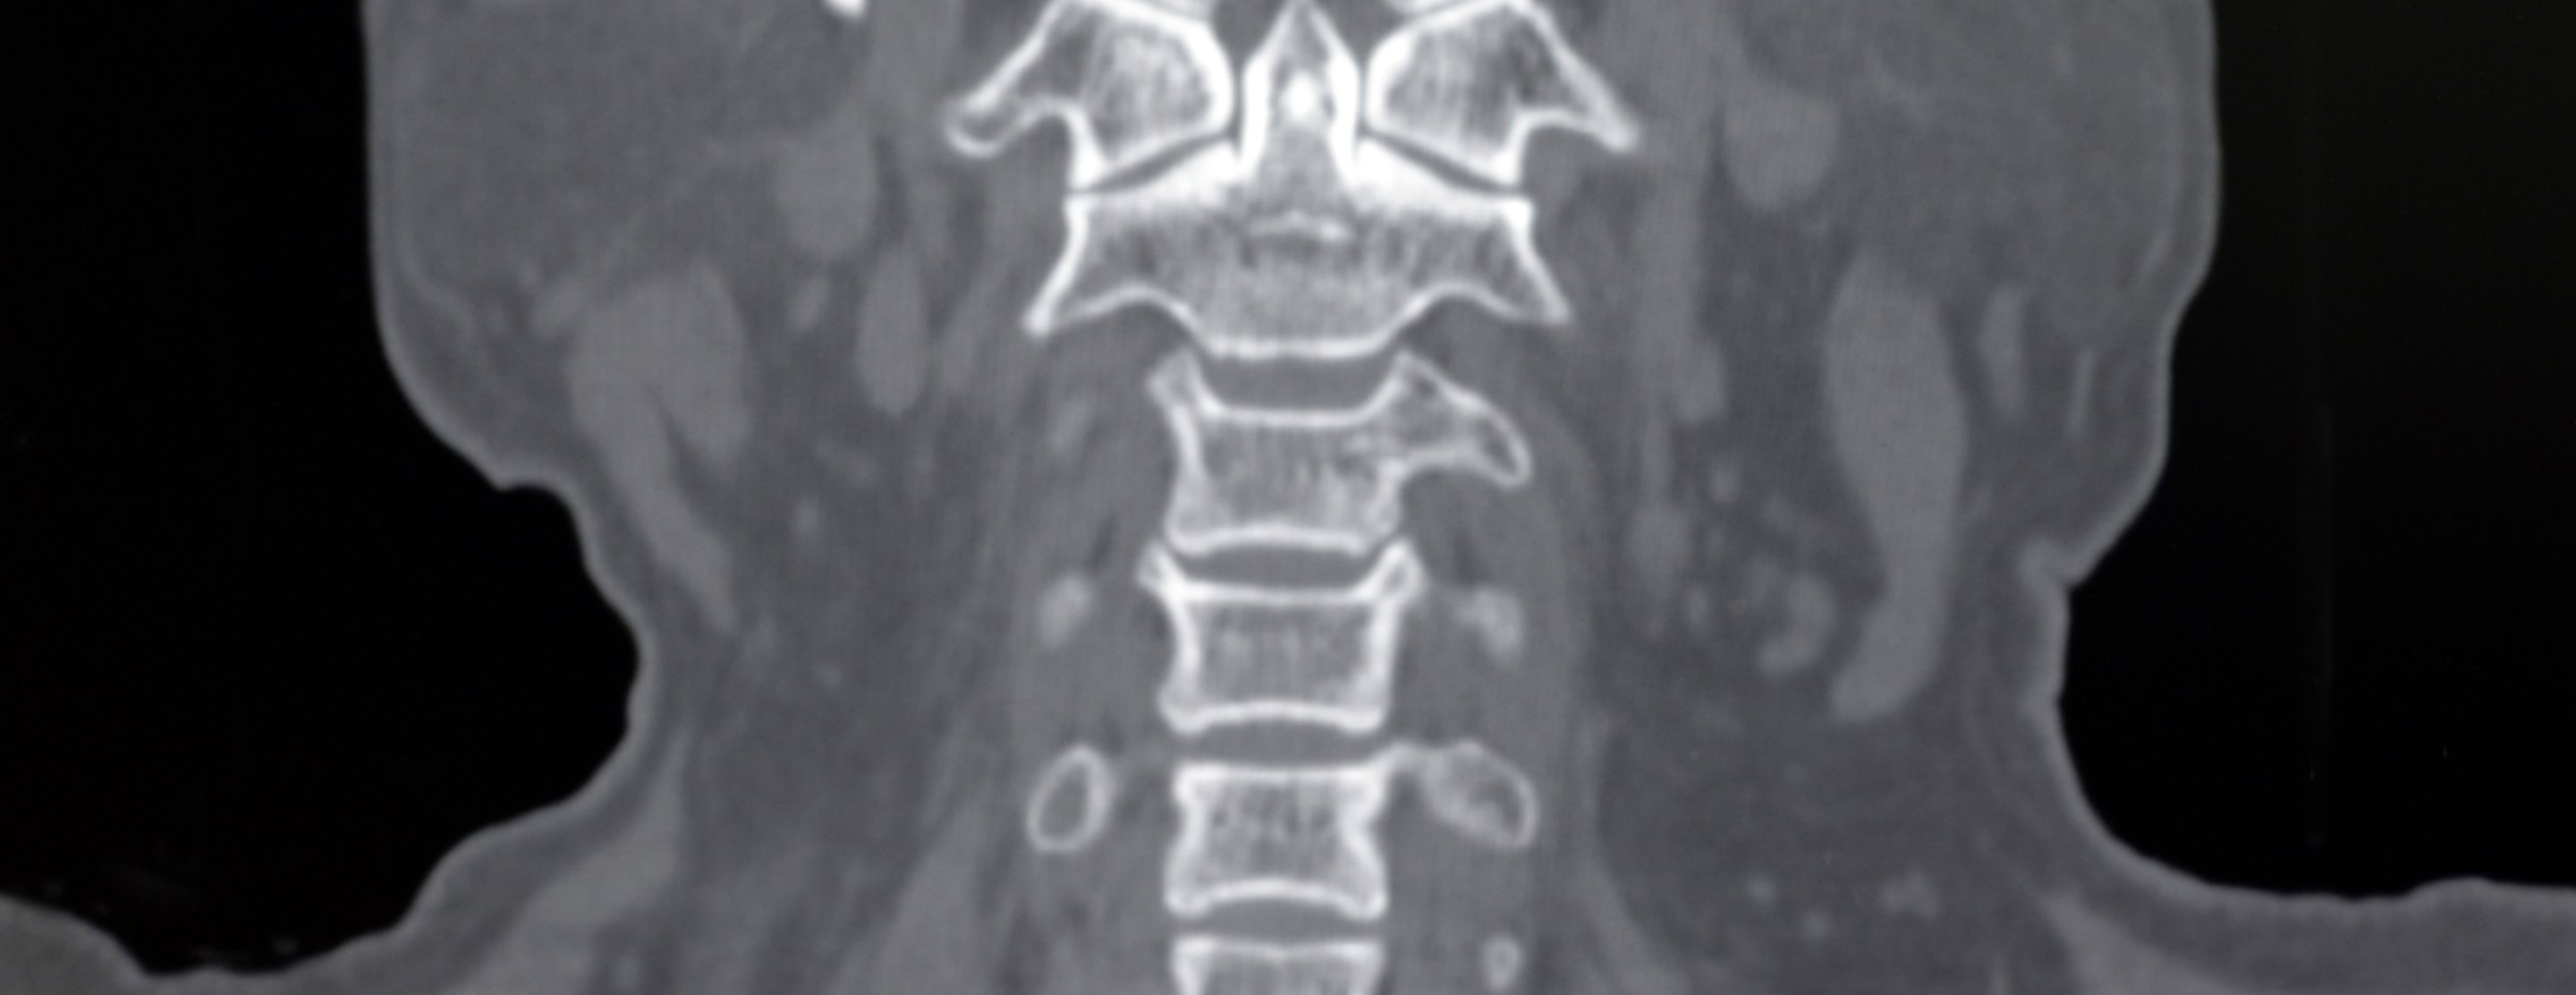 Cervical spine CT scan